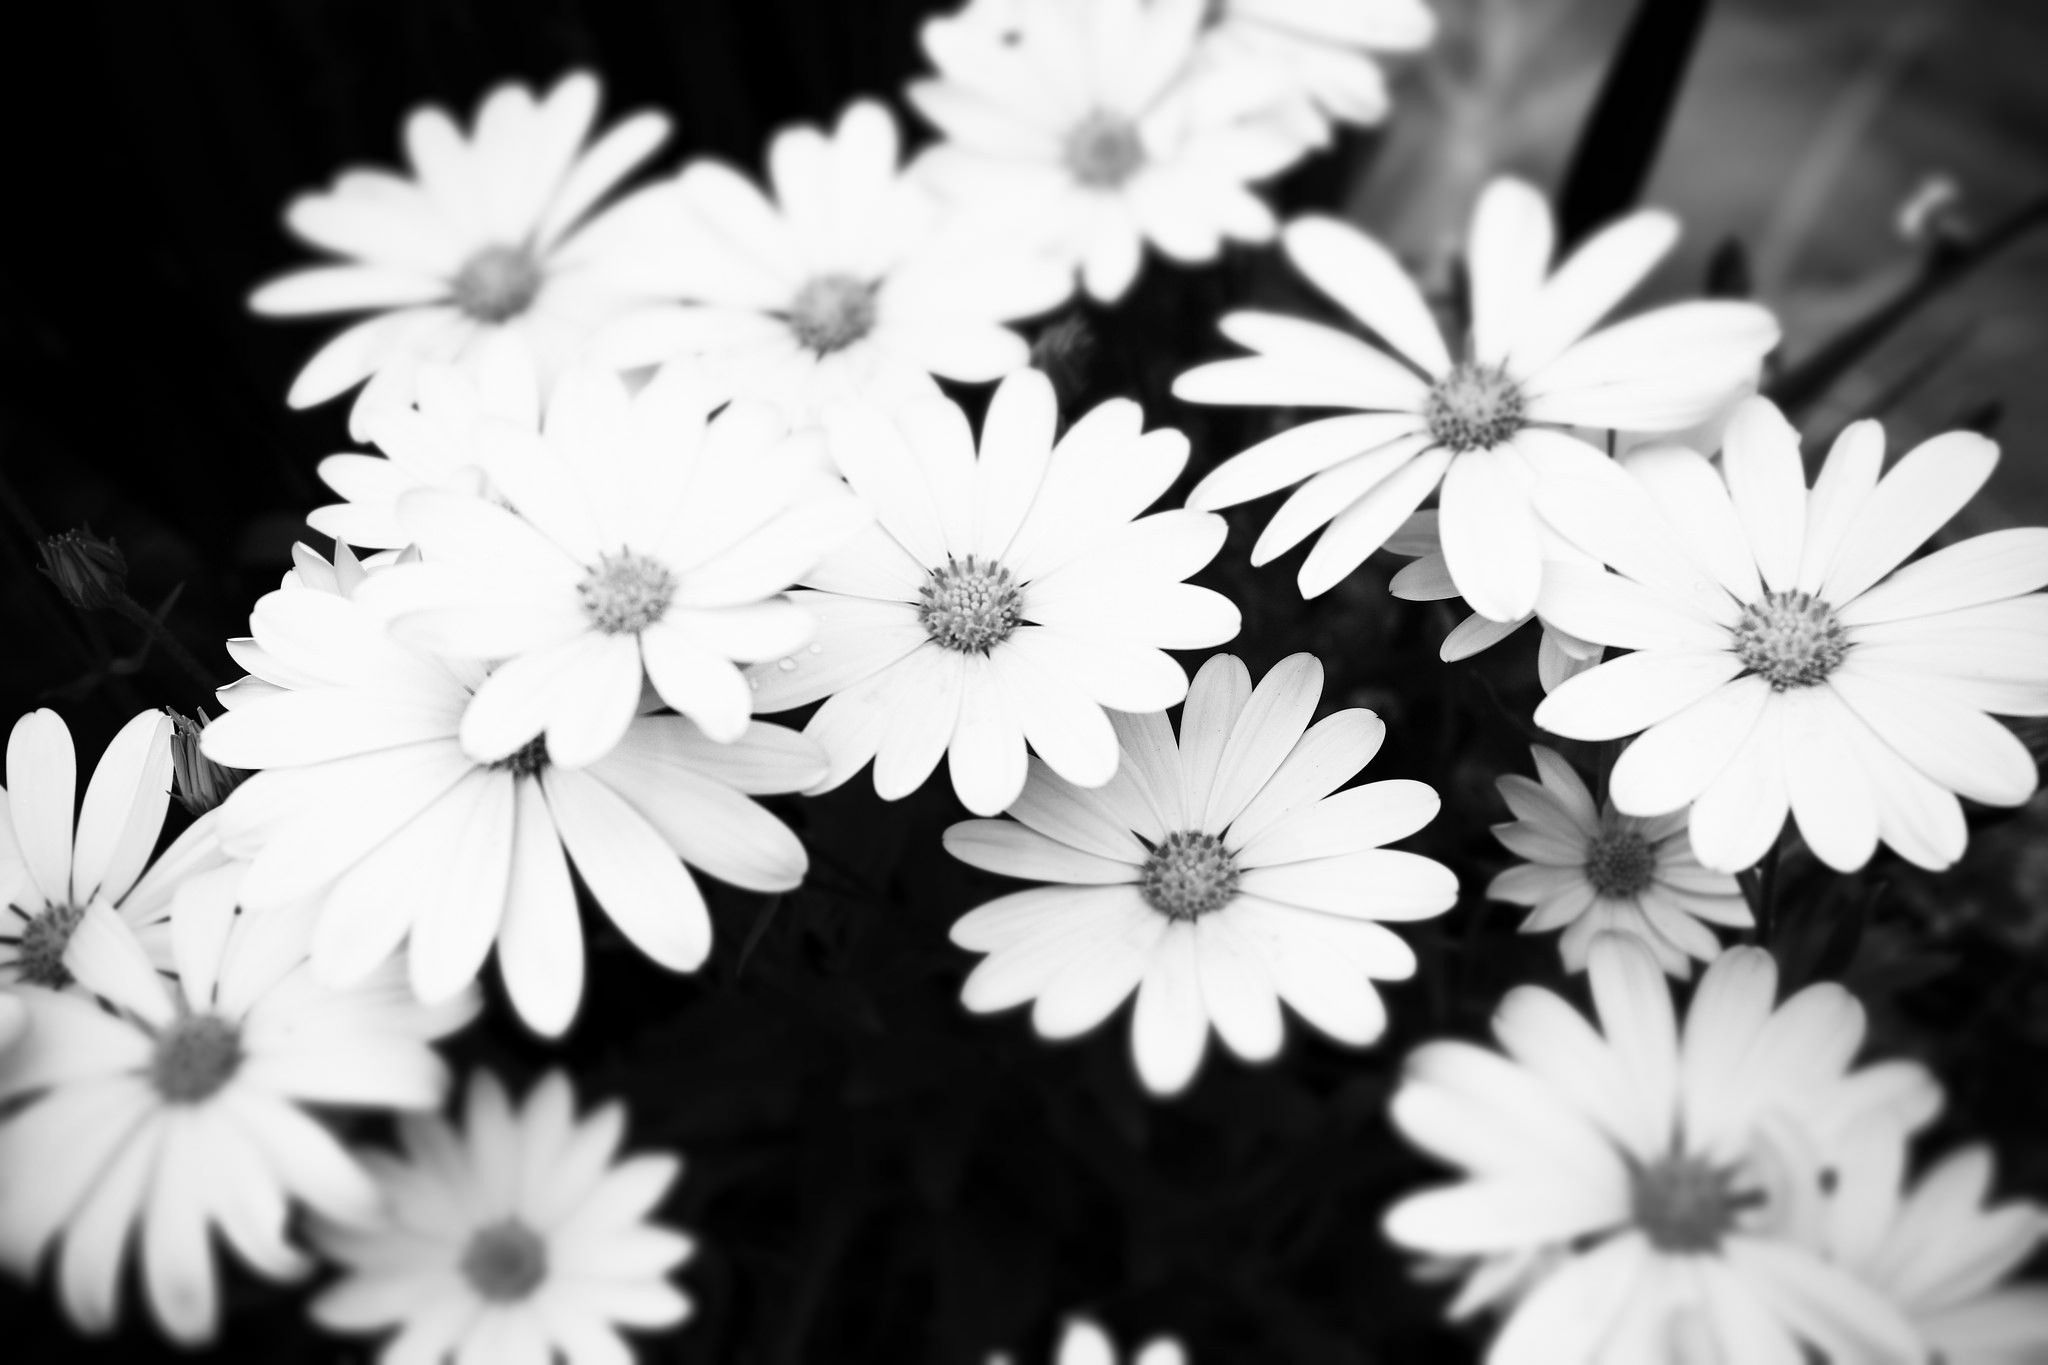 عکس بک گراند گل های سفید با کیفیت hd